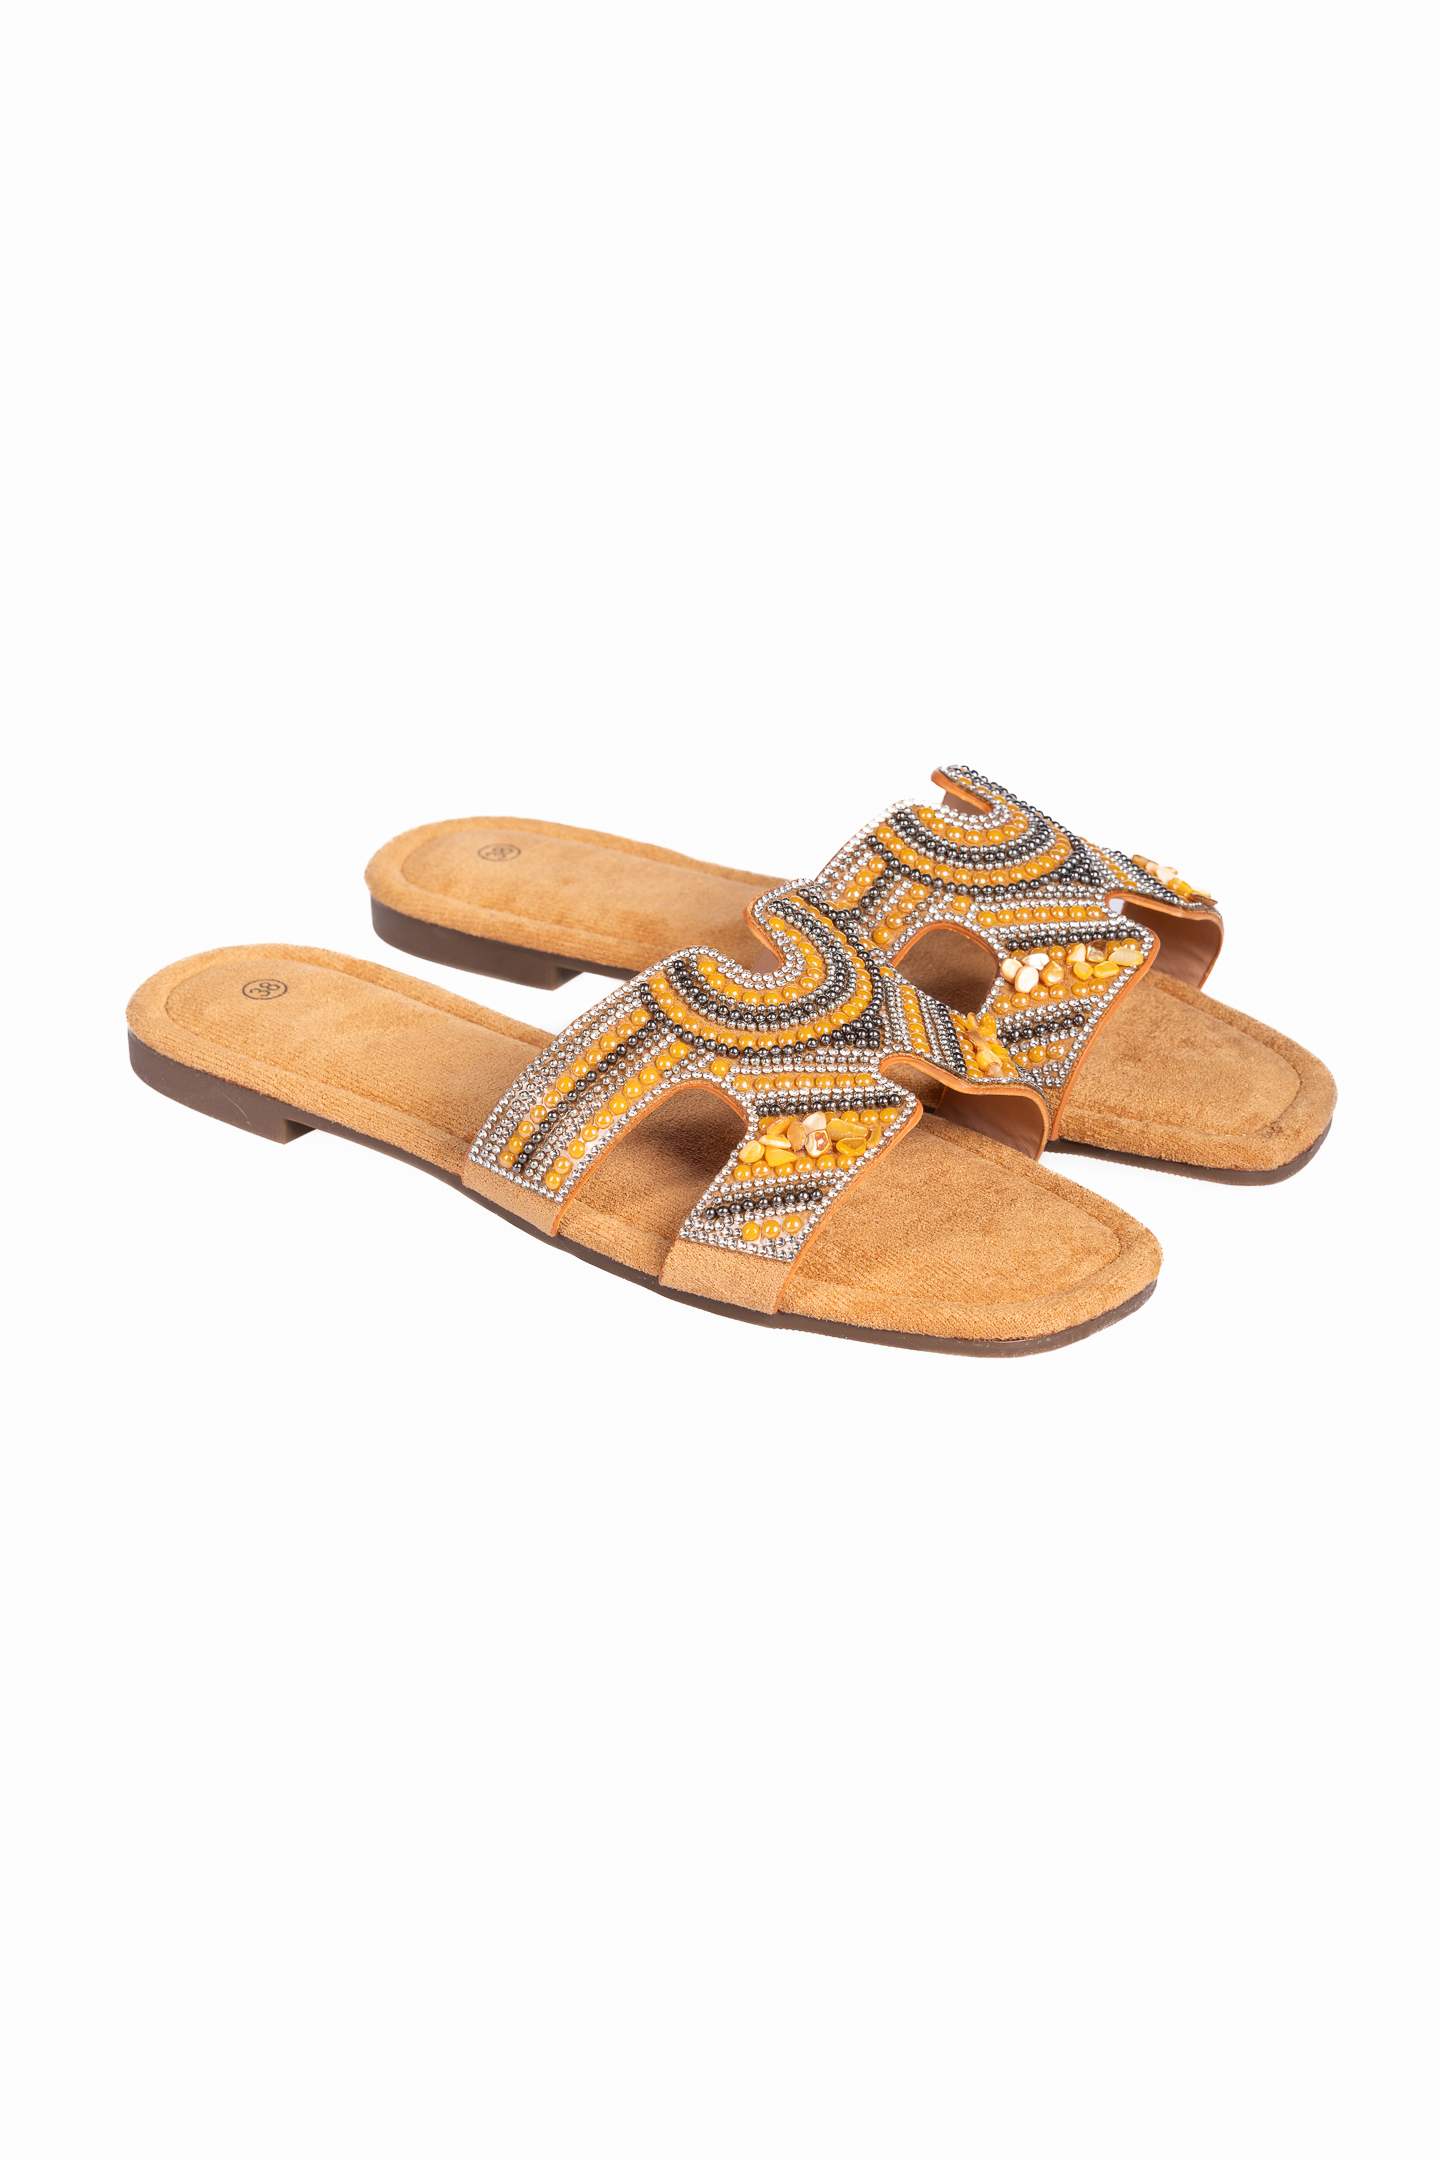 Παπούτσια > Σανδάλια Flat boho σανδάλια με χάντρες - Κάμελ